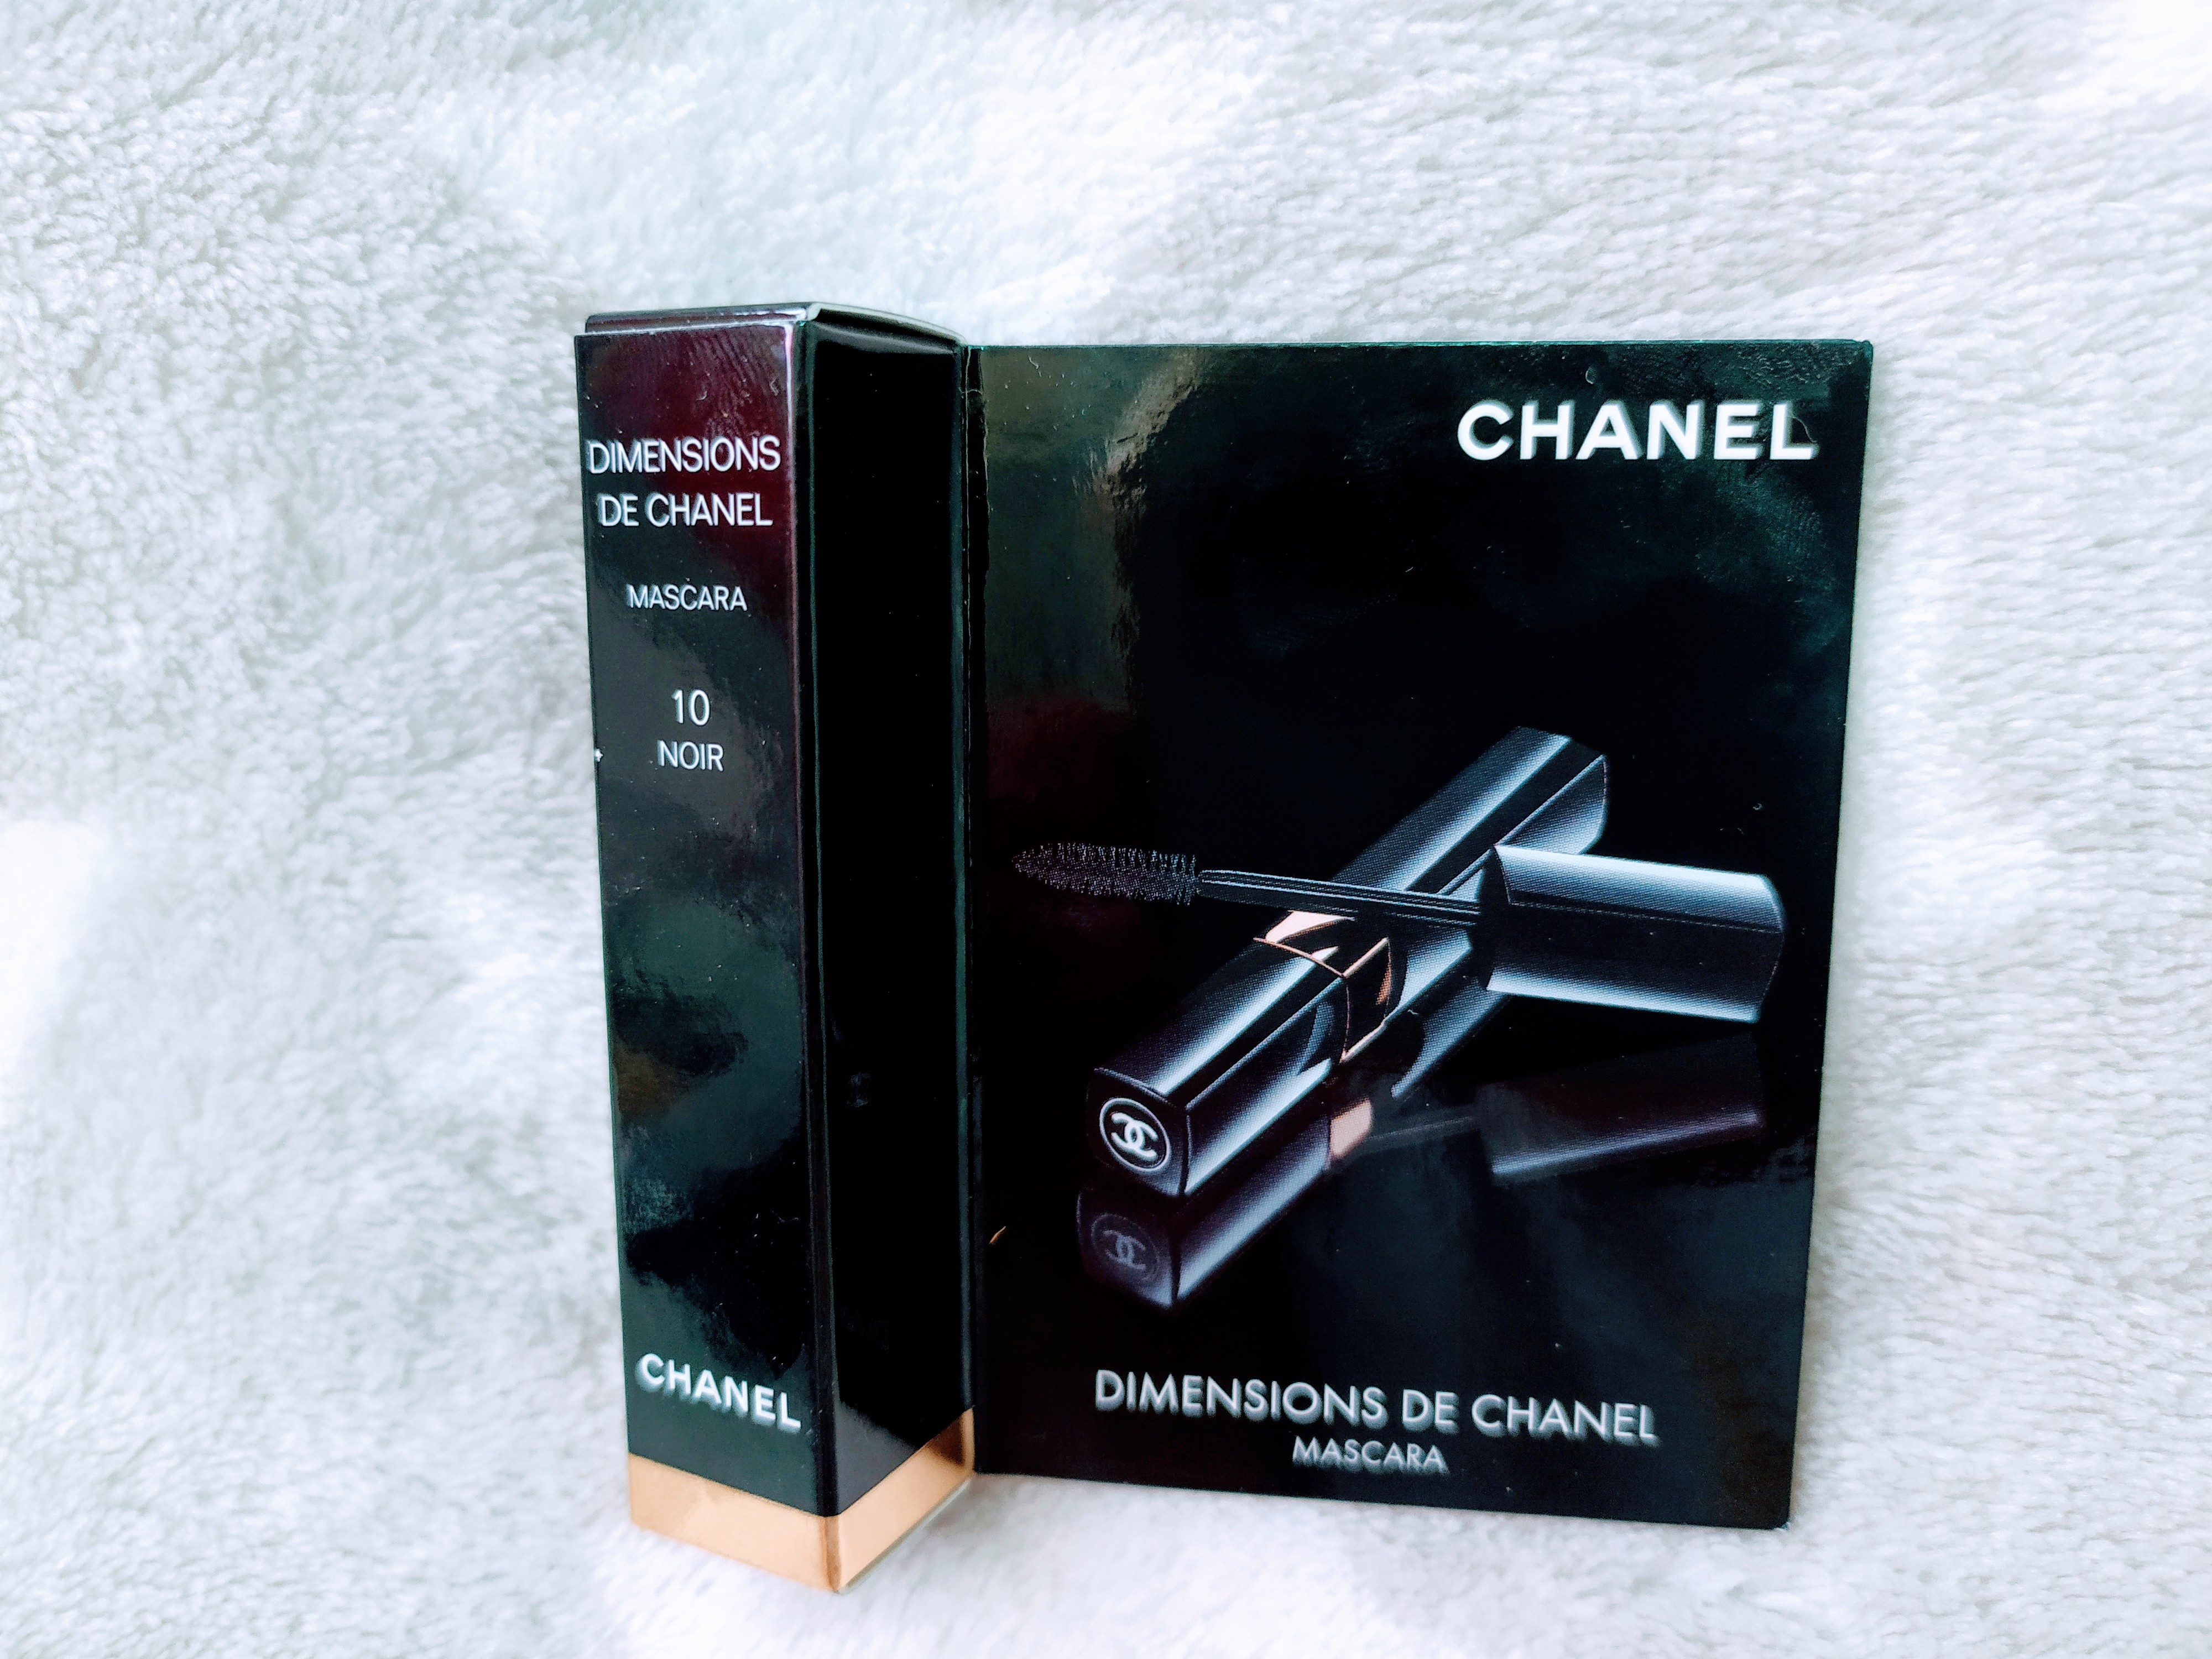 Le Volume De Chanel Mascara Review Vending Machine  British Vogue   British Vogue